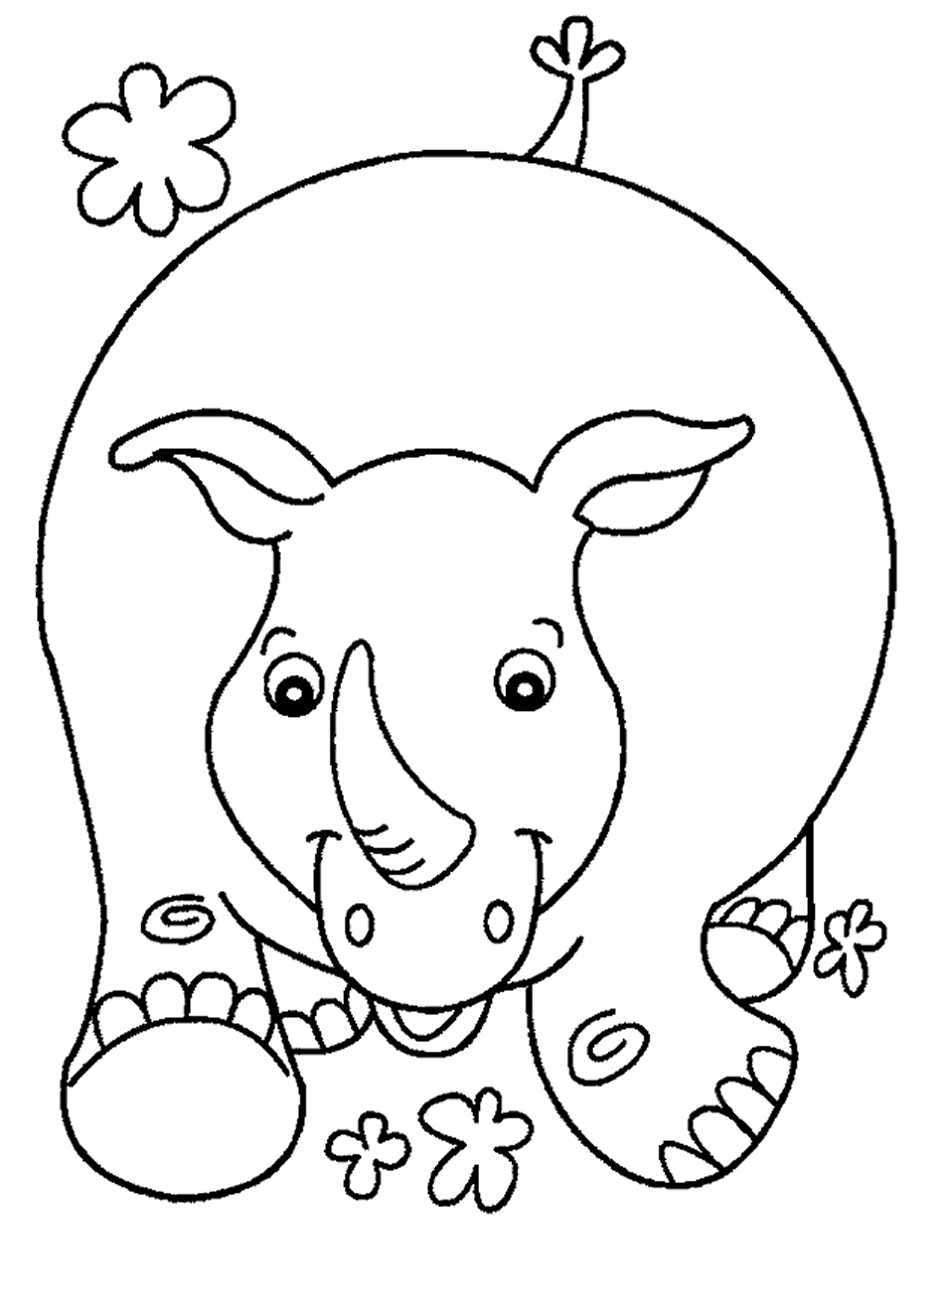 image rhinoc�ros coloriage � dessiner